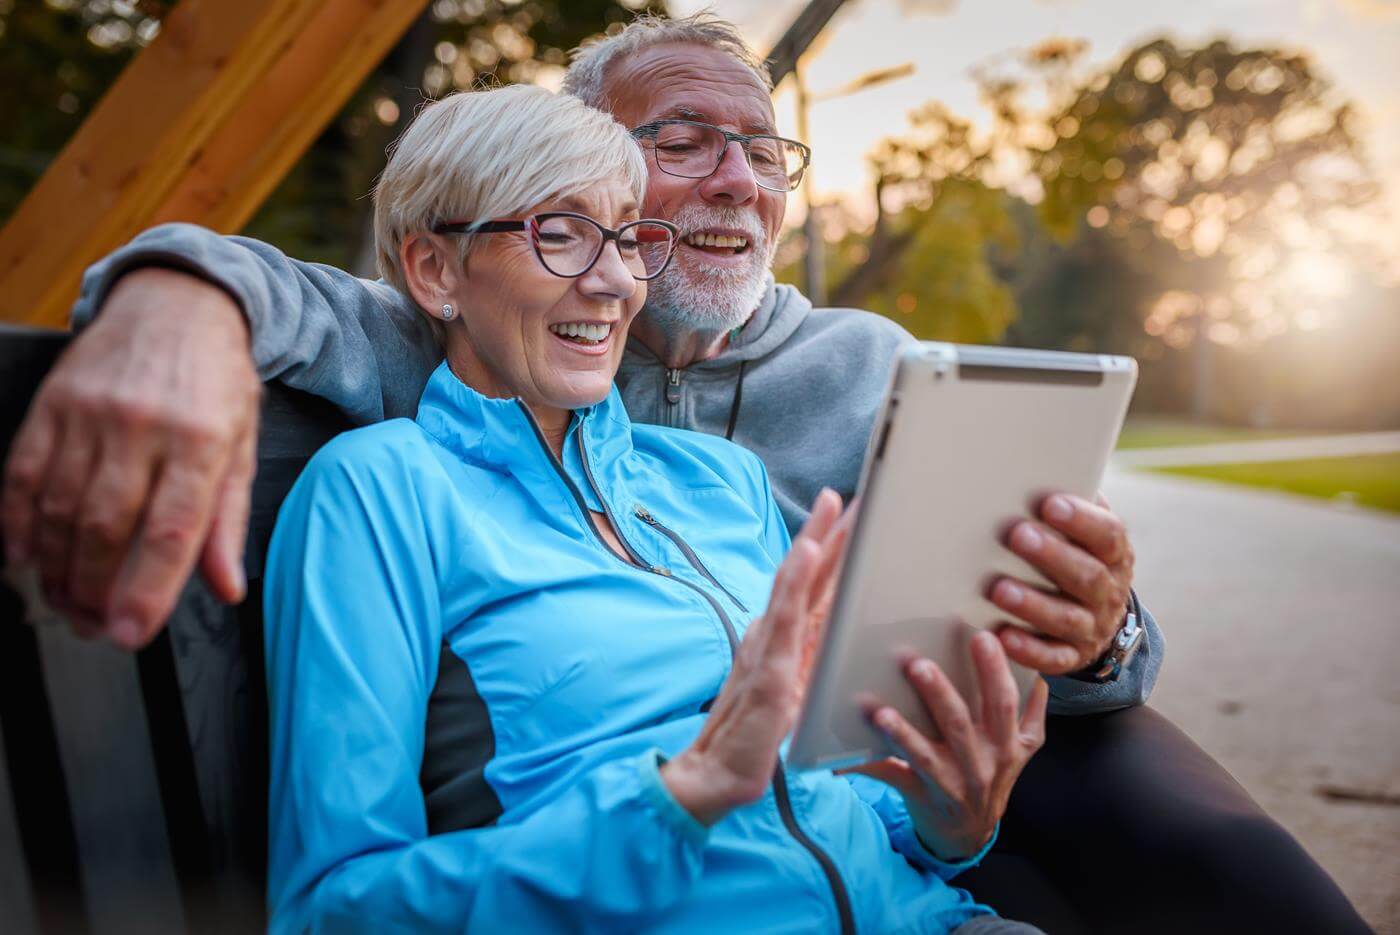 Lächelndes älteres aktives Paar, das auf einer Bank im Park sitzt und auf einen Tablet-Computer schaut. Nutzung moderner Technologie durch ältere Menschen